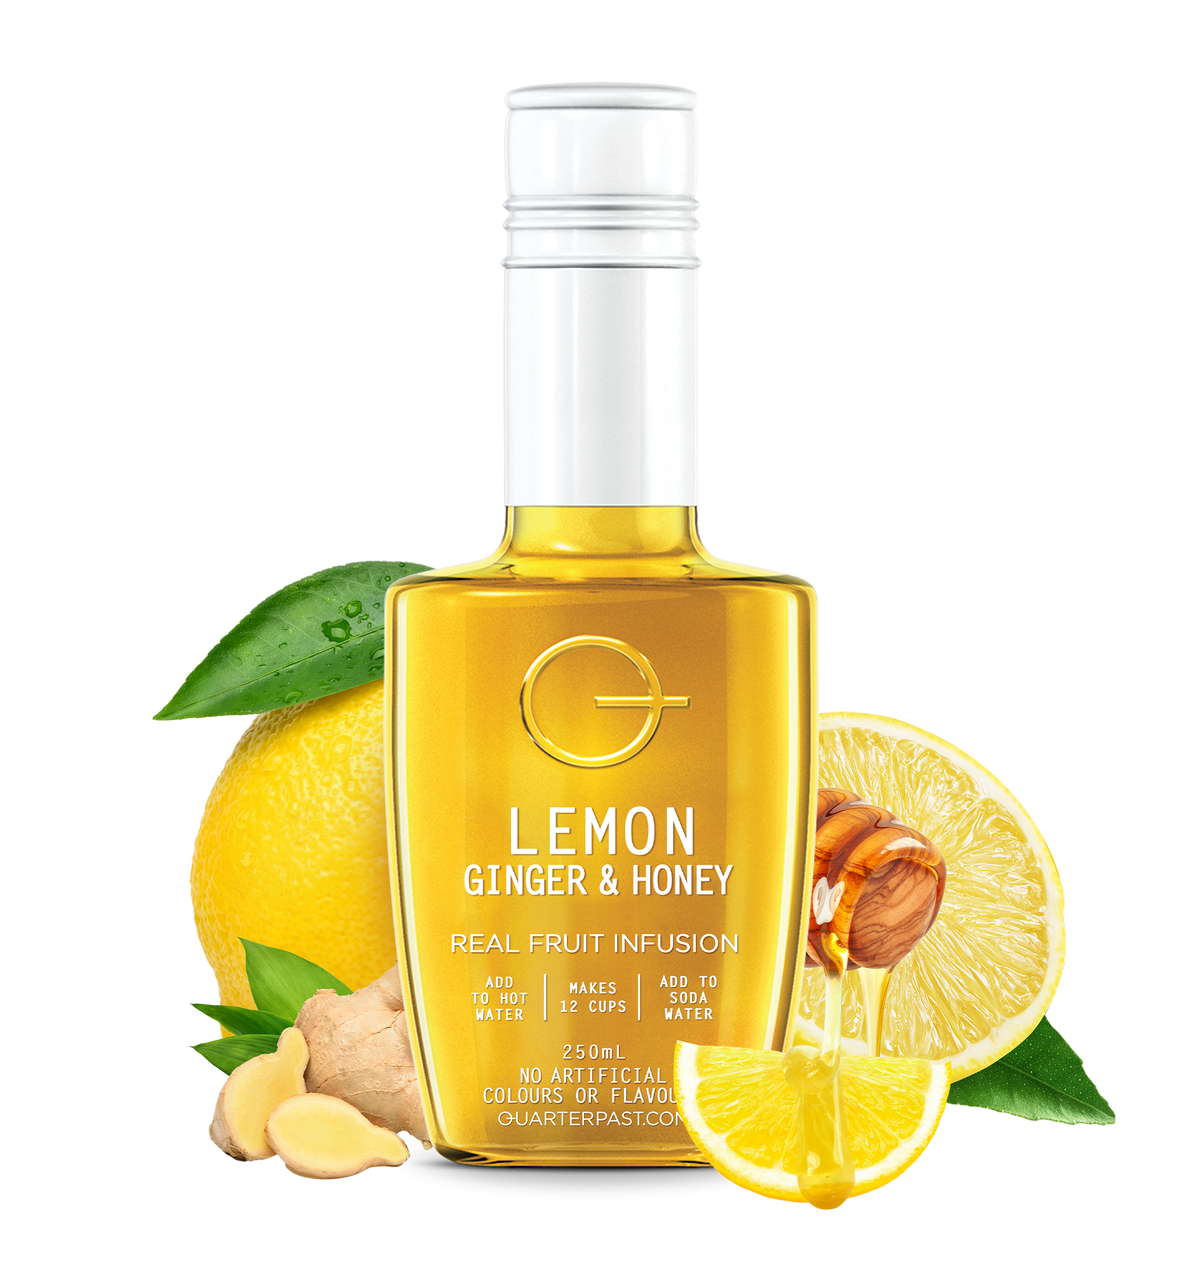 Lemon Ginger & Honey Fruit Infusion